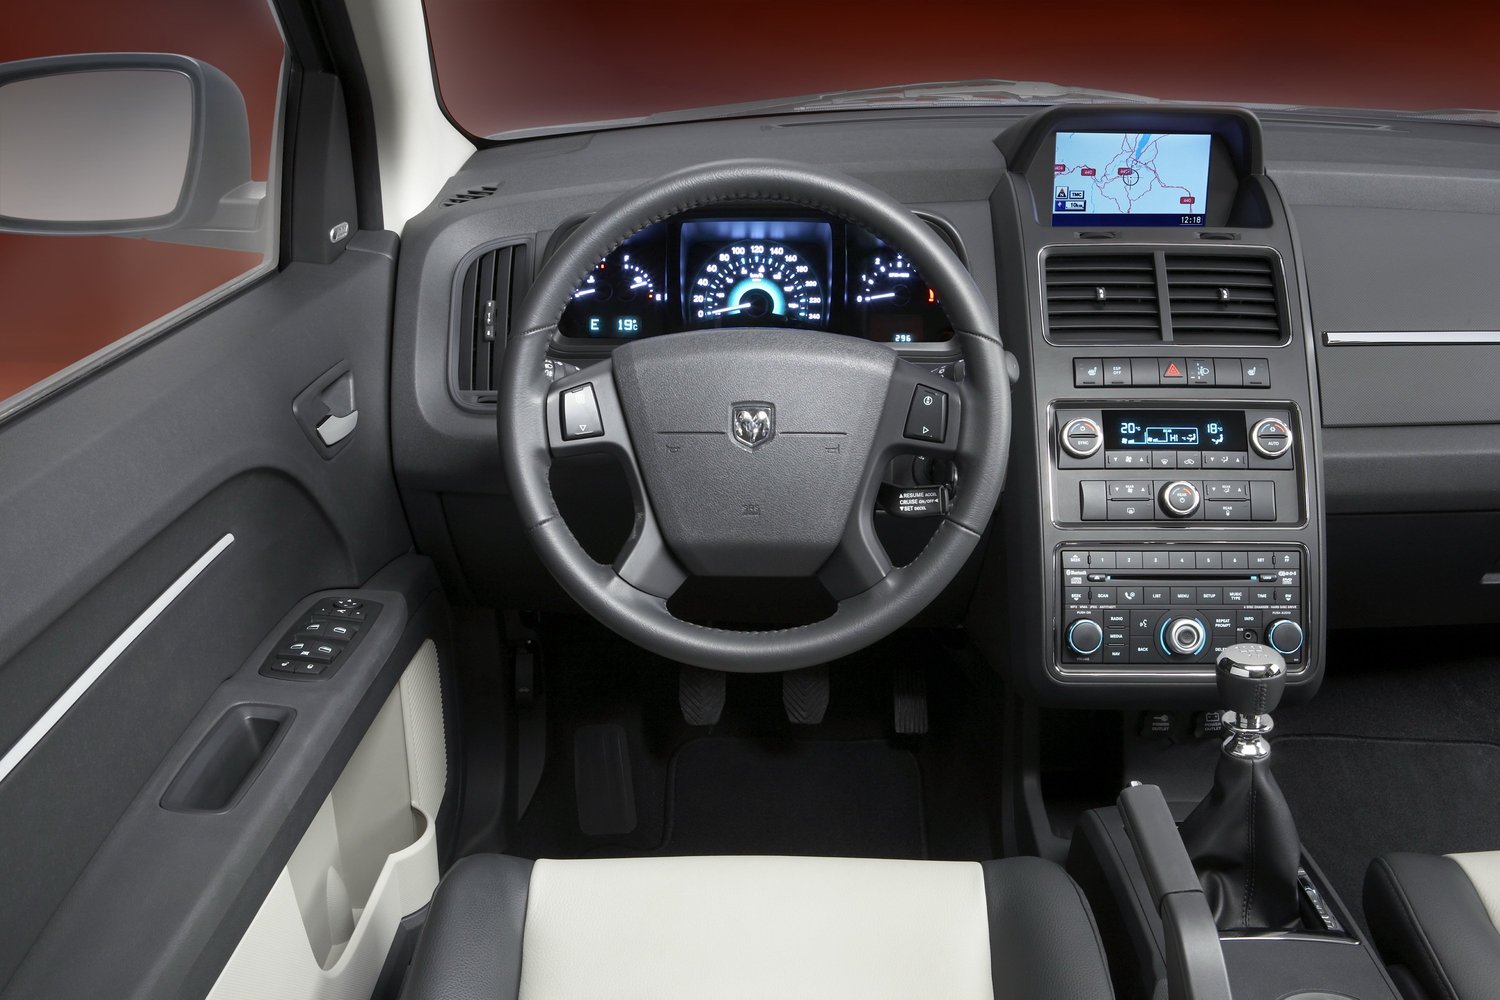 кроссовер Dodge Journey 2008 - 2016г выпуска модификация 2.0 MT (140 л.с.)